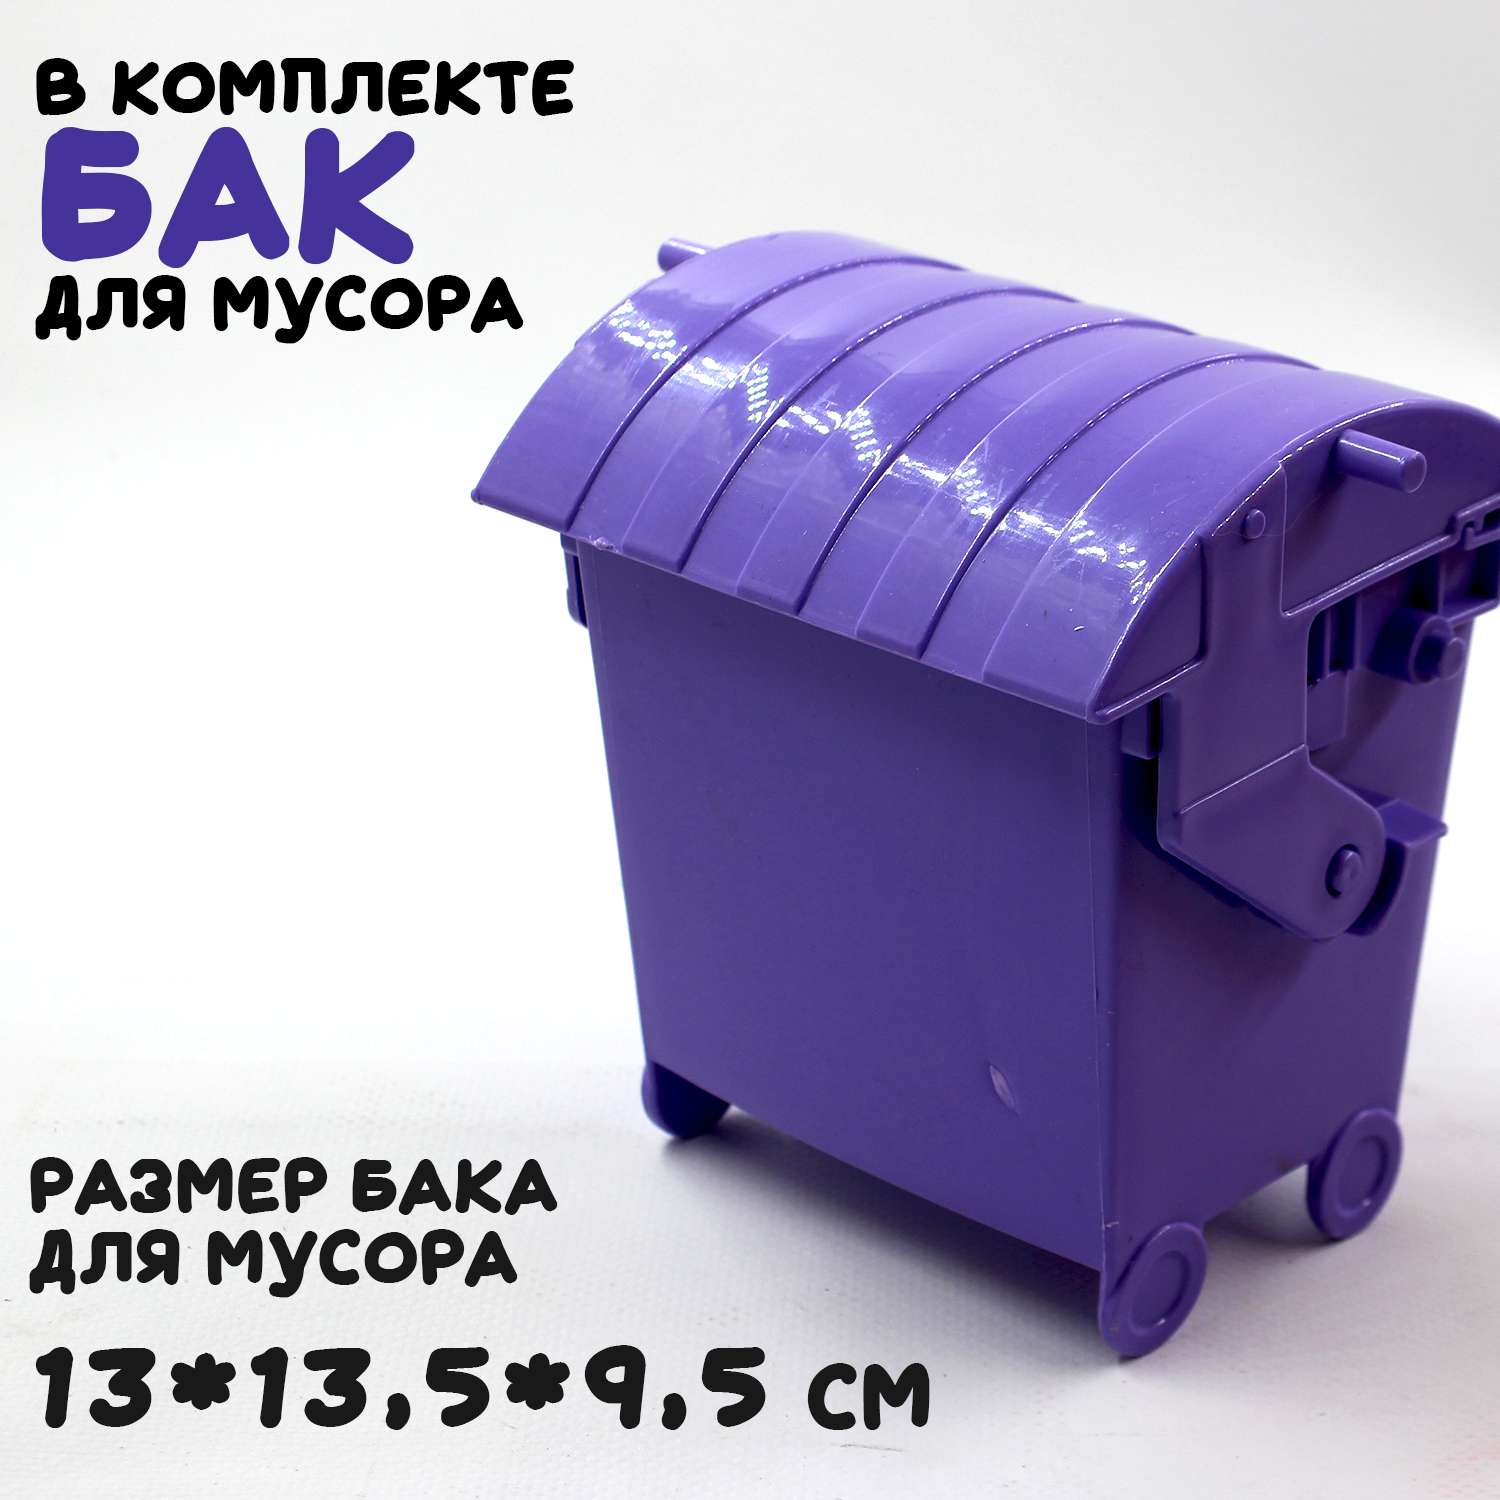 Большая машина Атлантис Colorplast мусоровоз длина 54 см 0633/01 - фото 6